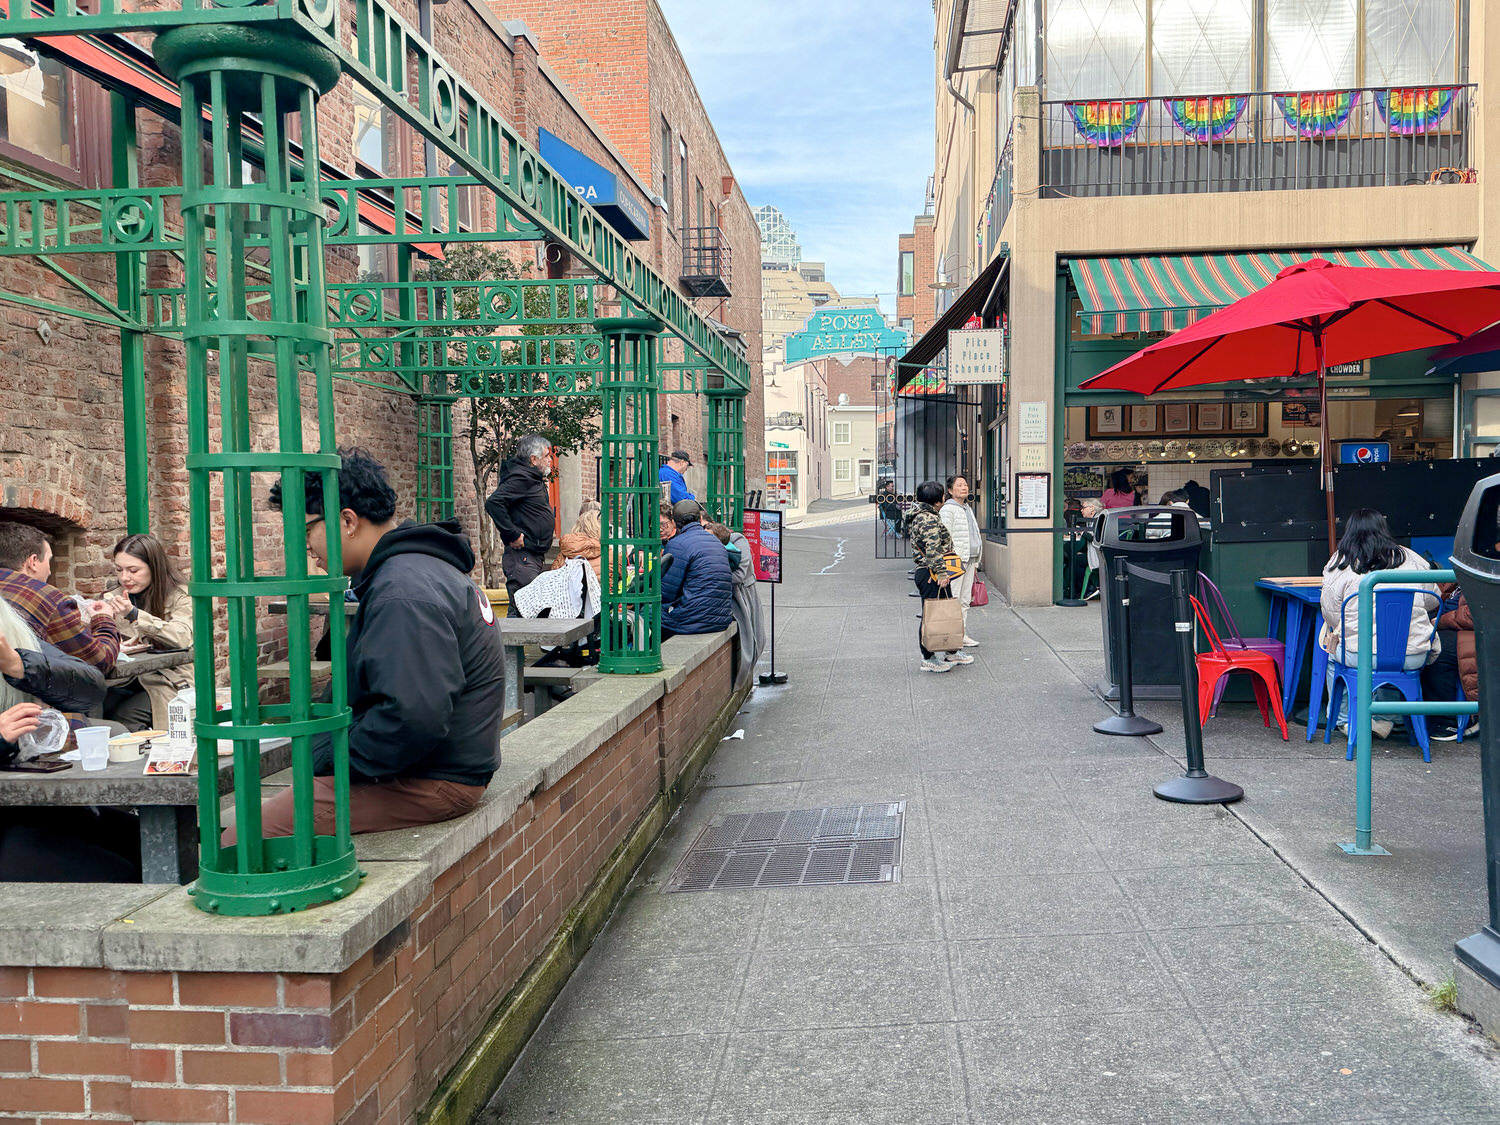 西雅圖自由行懶人包
派克市場 Pike Place Market
Pike Place Chowder